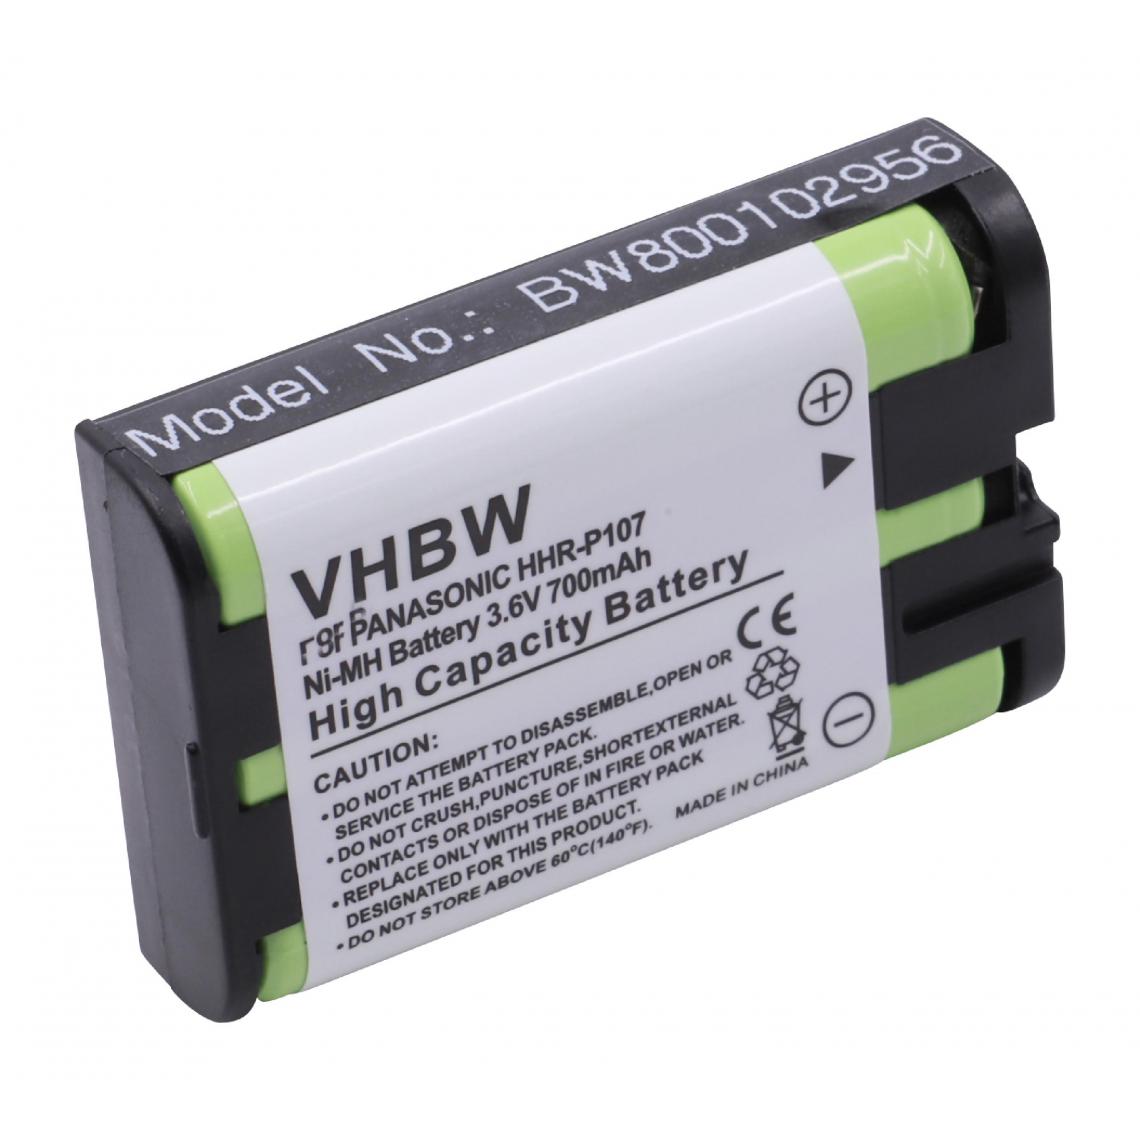 Vhbw - vhbw NiMH batterie 700mAh (3.6V) pour téléphone fixe sans fil Panasonic KX-TG2267B, KX-TG2267S, KX-TG2700S, KX-TG2720S, KX-TG2730S, KX-TG2740S - Batterie téléphone